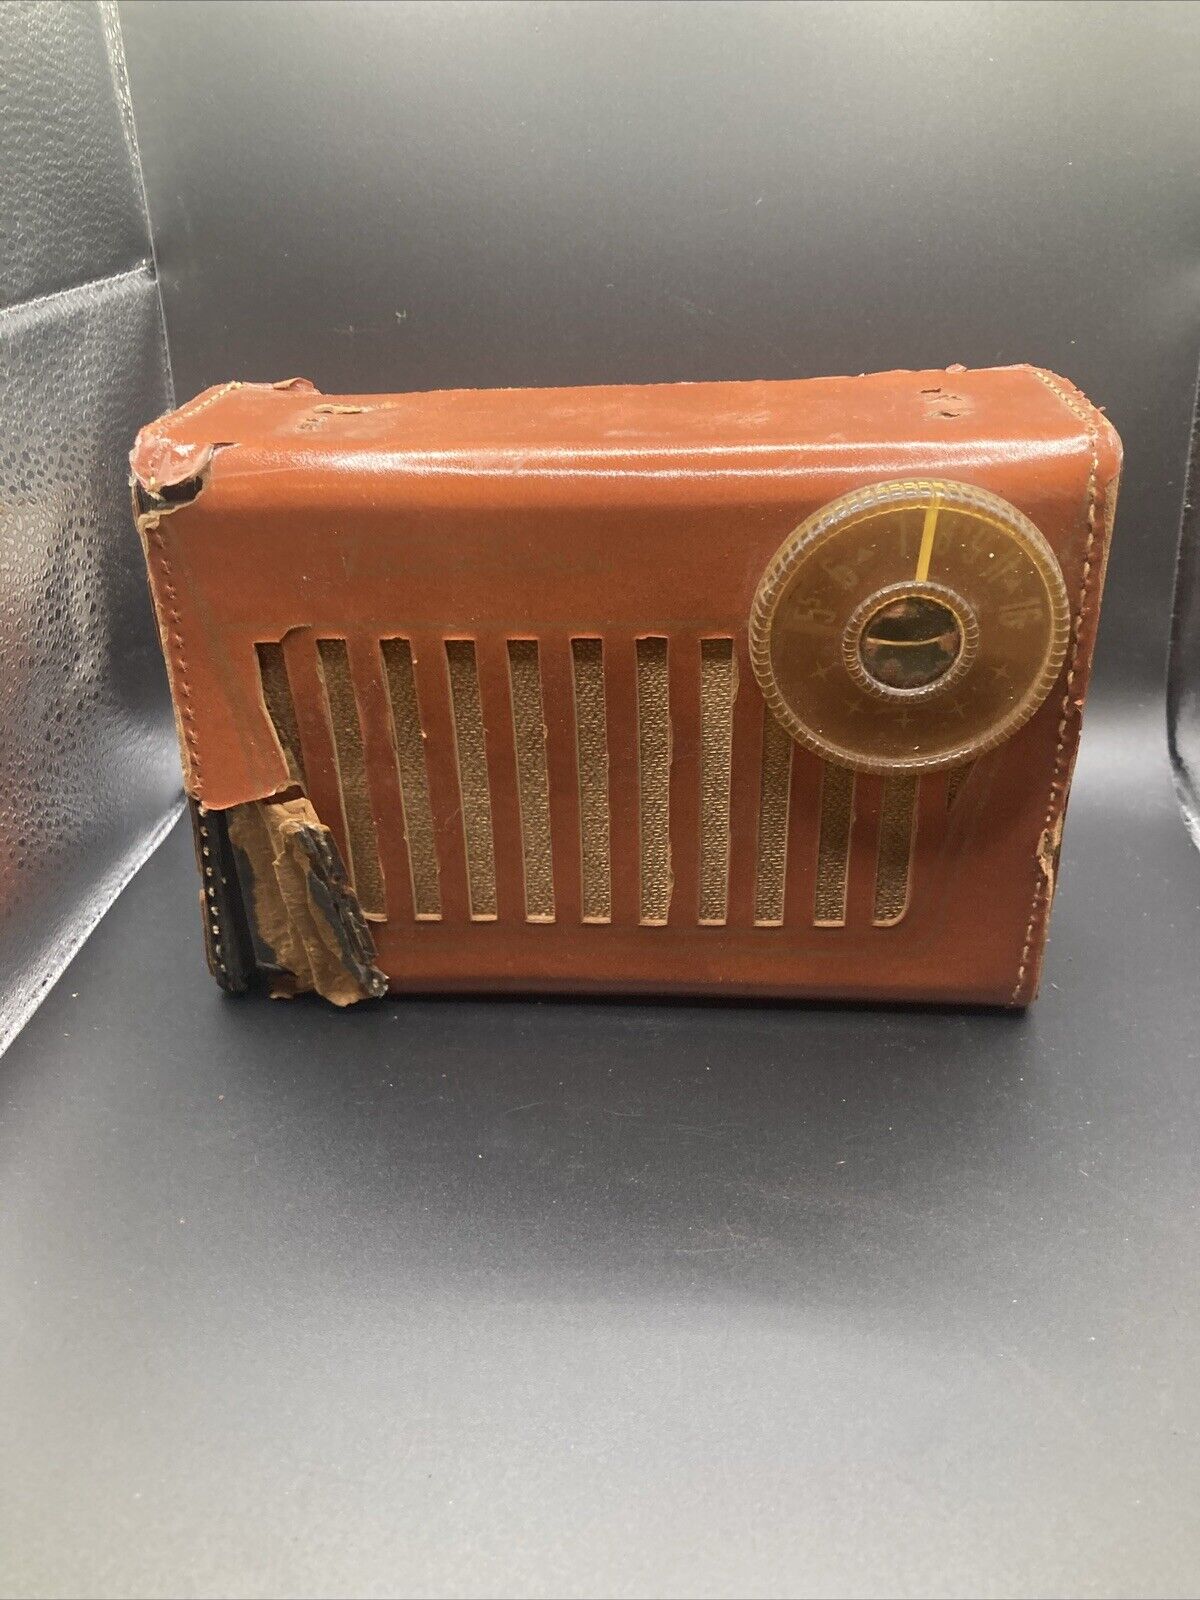 Vintage Truetone Portable Radio 1940’s/50’s